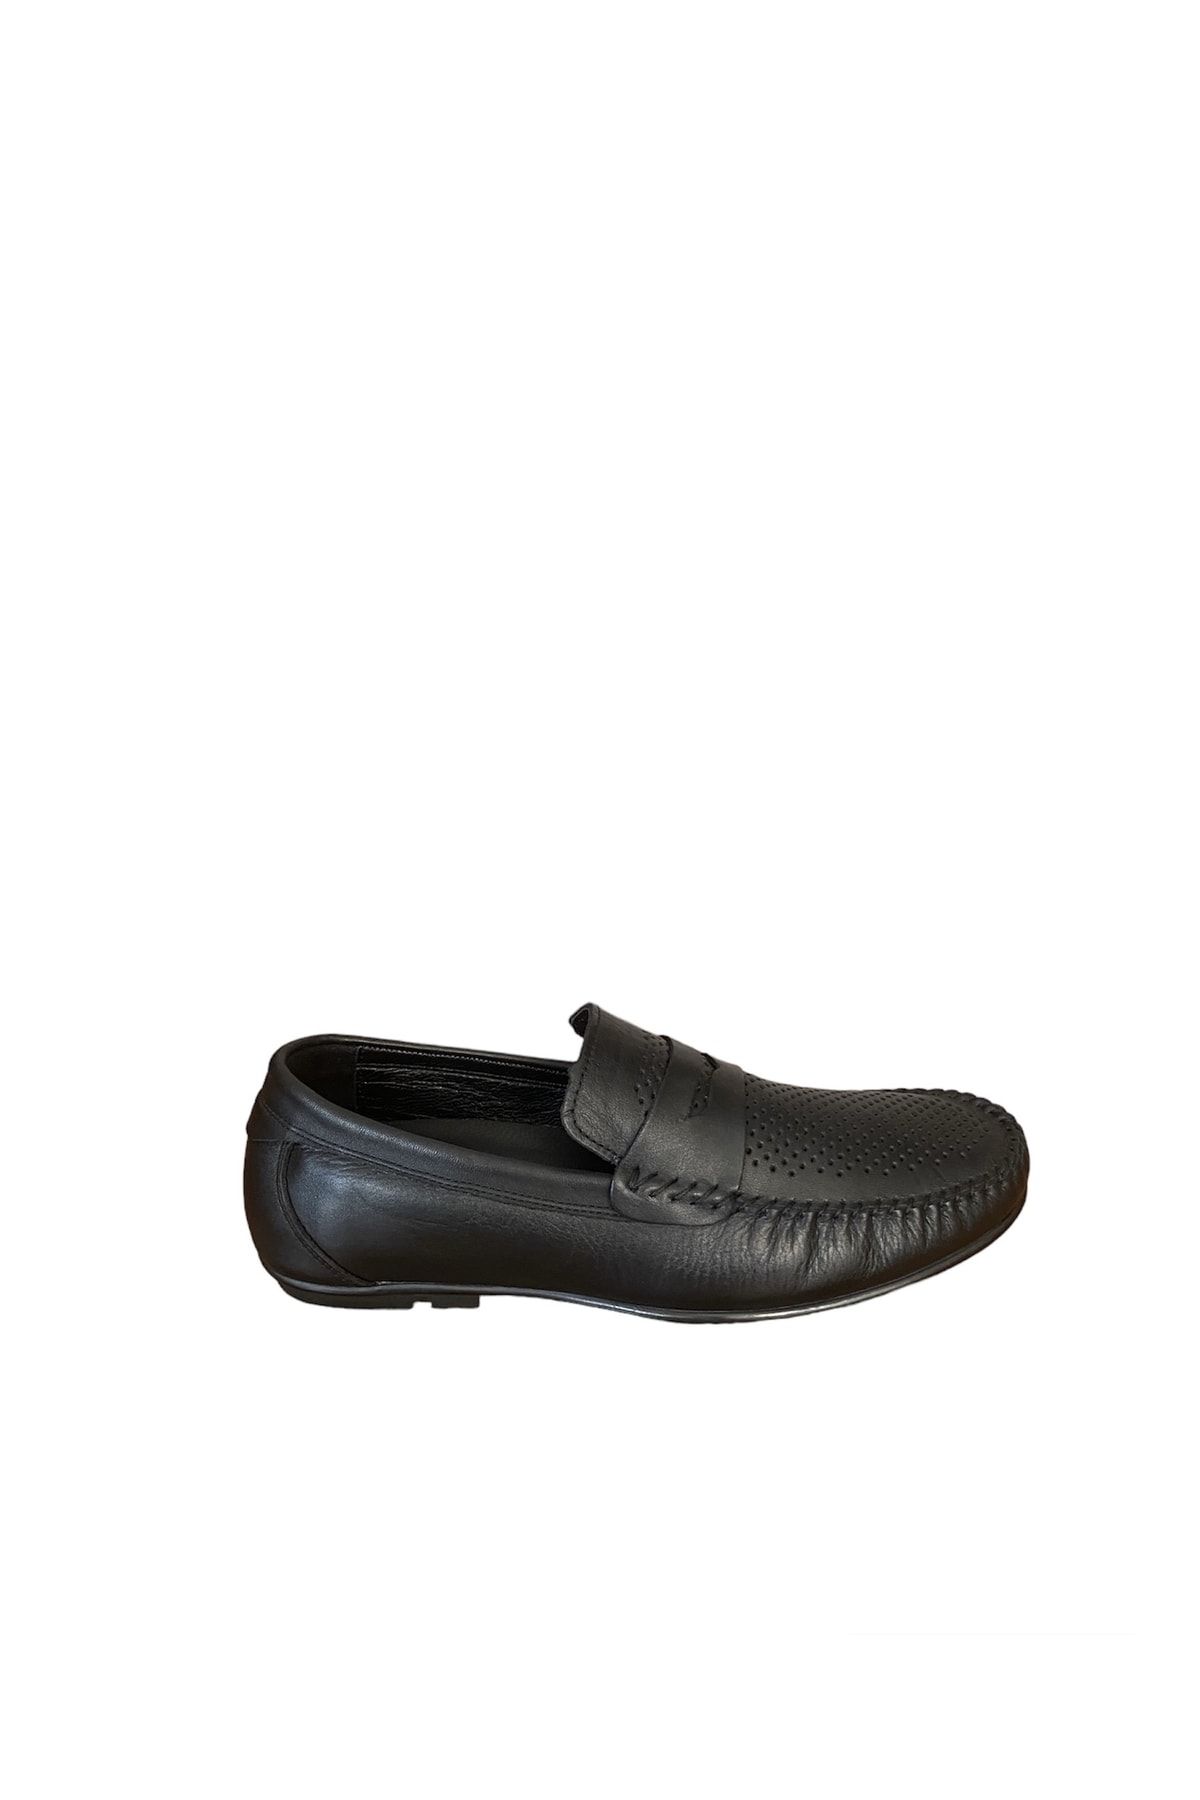 JAMES FRANCO m6720 hakiki deri loafer siyah erkek ayakkabı